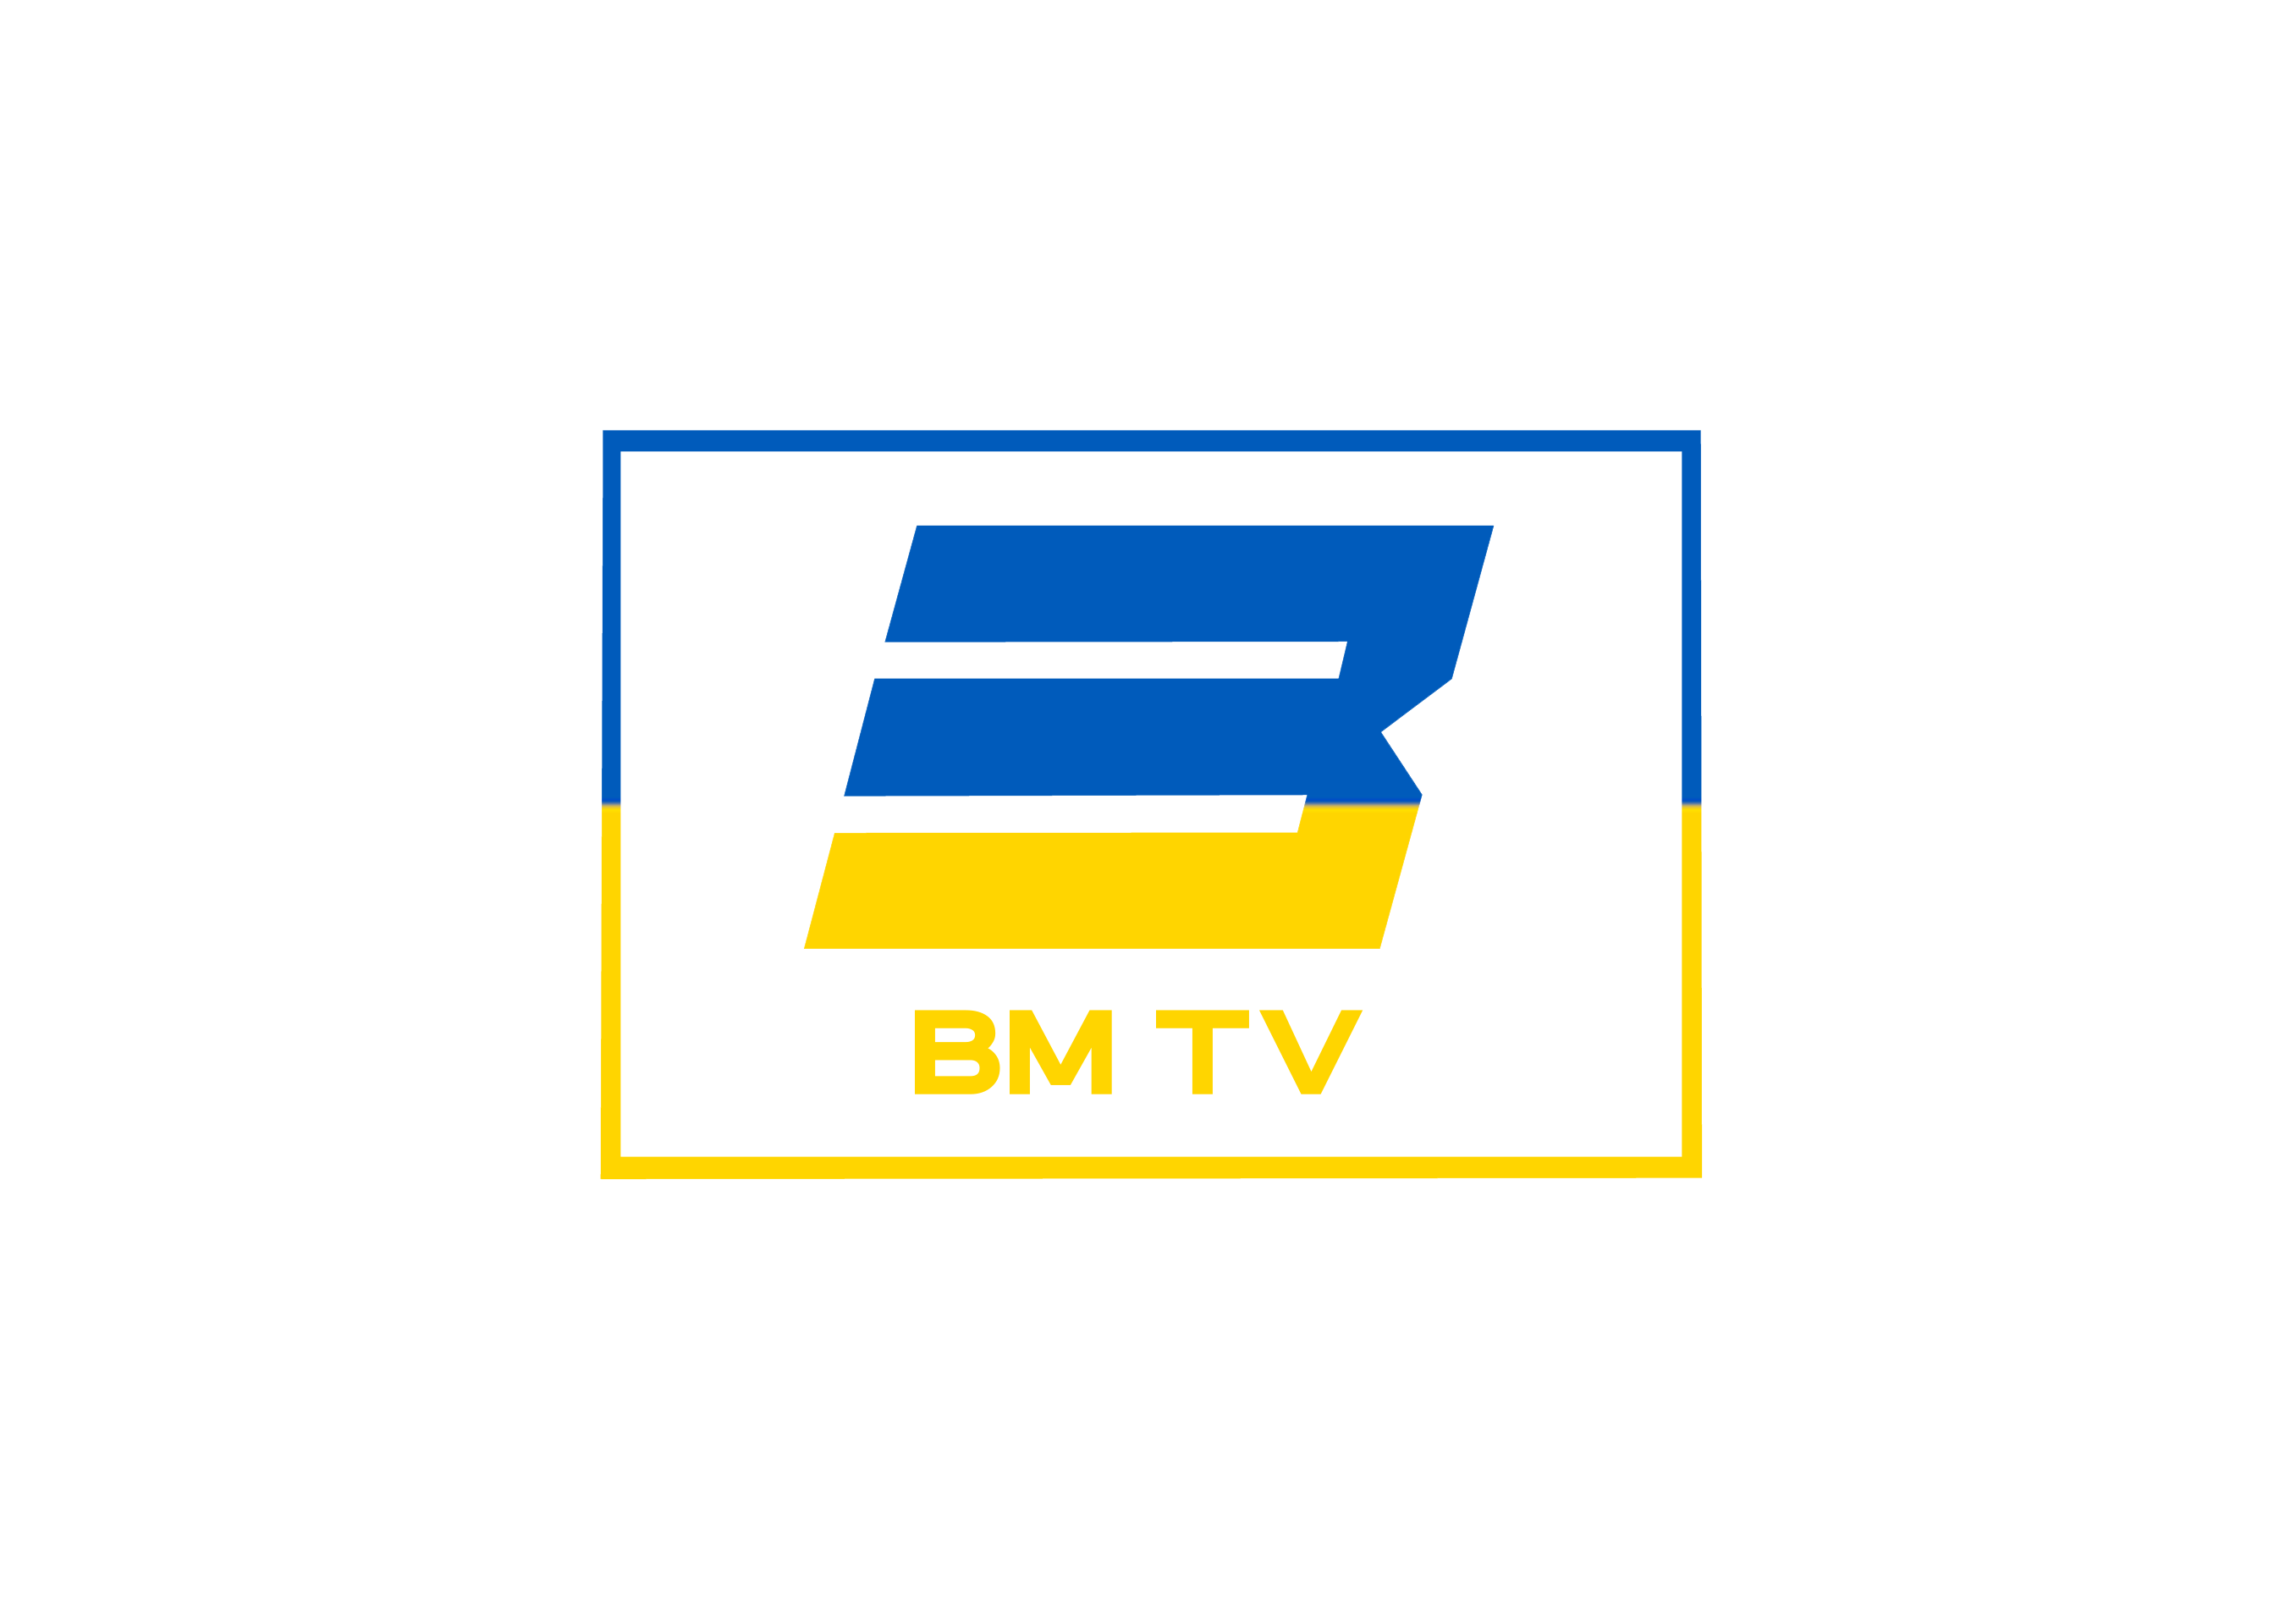 BM TV - Bridge Media TV - Wielokulturowy kanał telewizyjny na Litwie